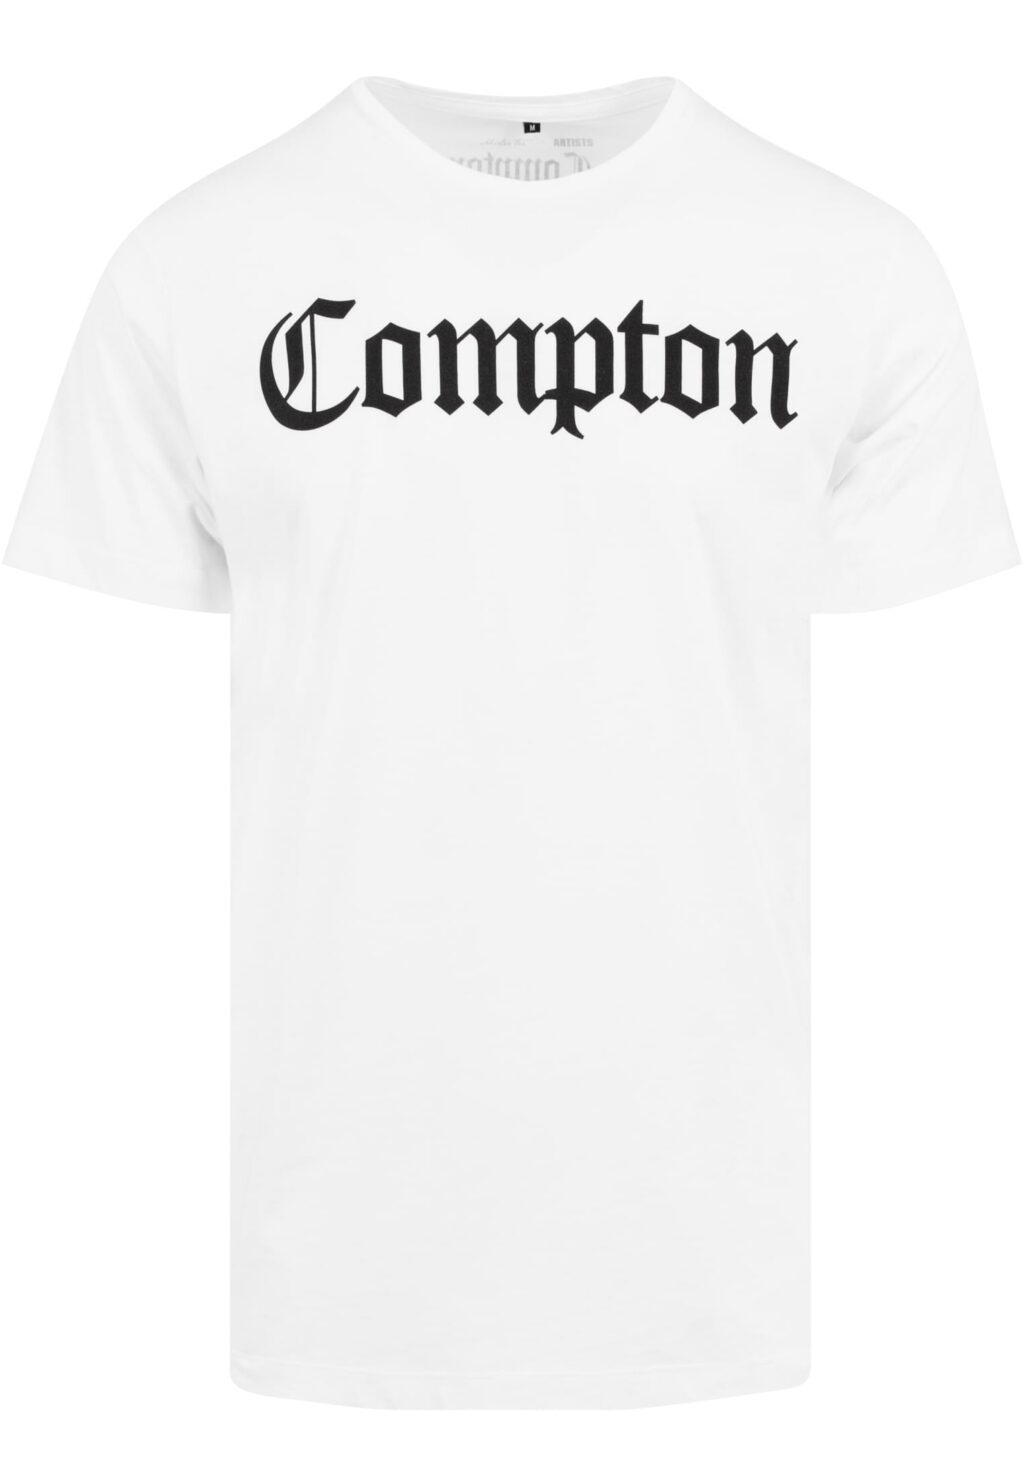 Compton Tee white MT268